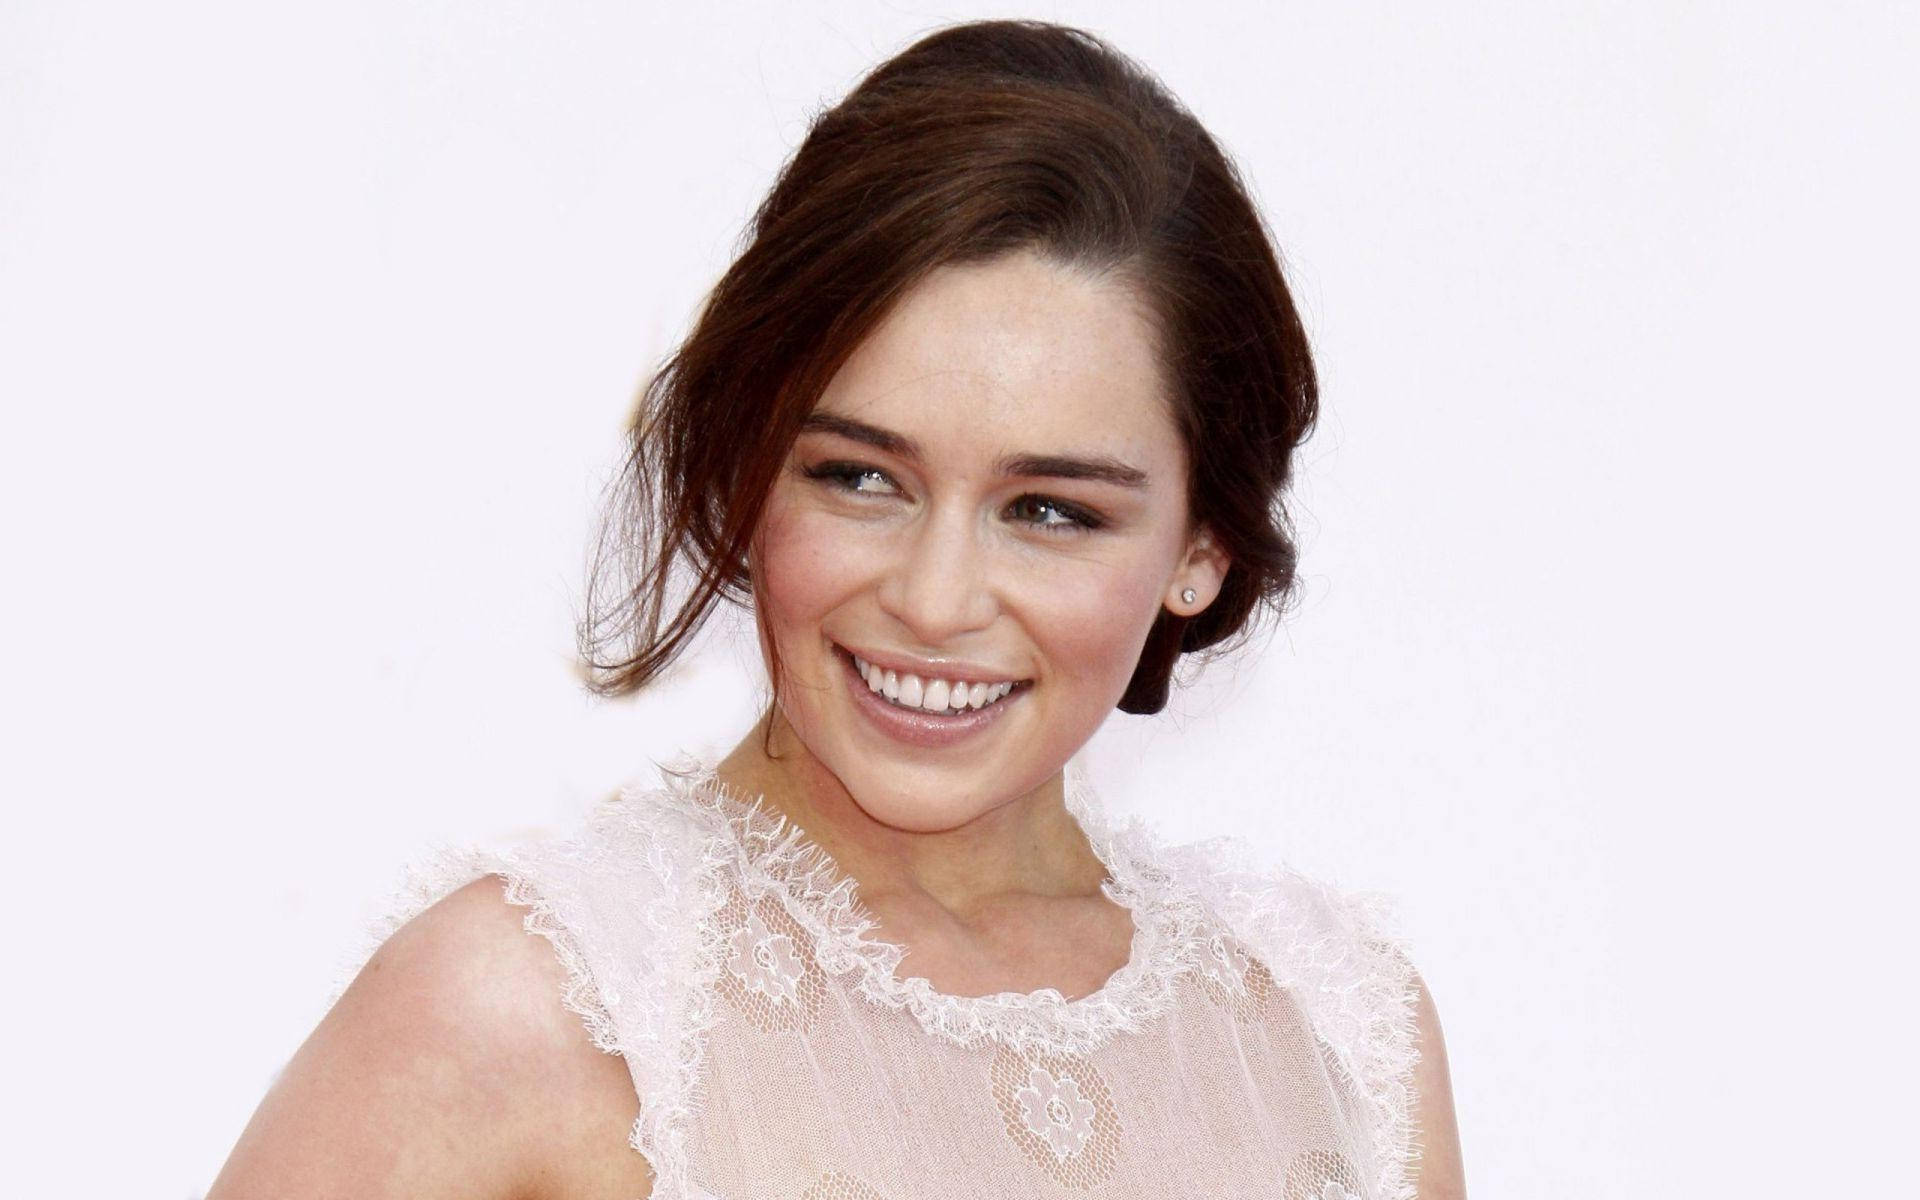 Award-winning Actress Emilia Clarke Background